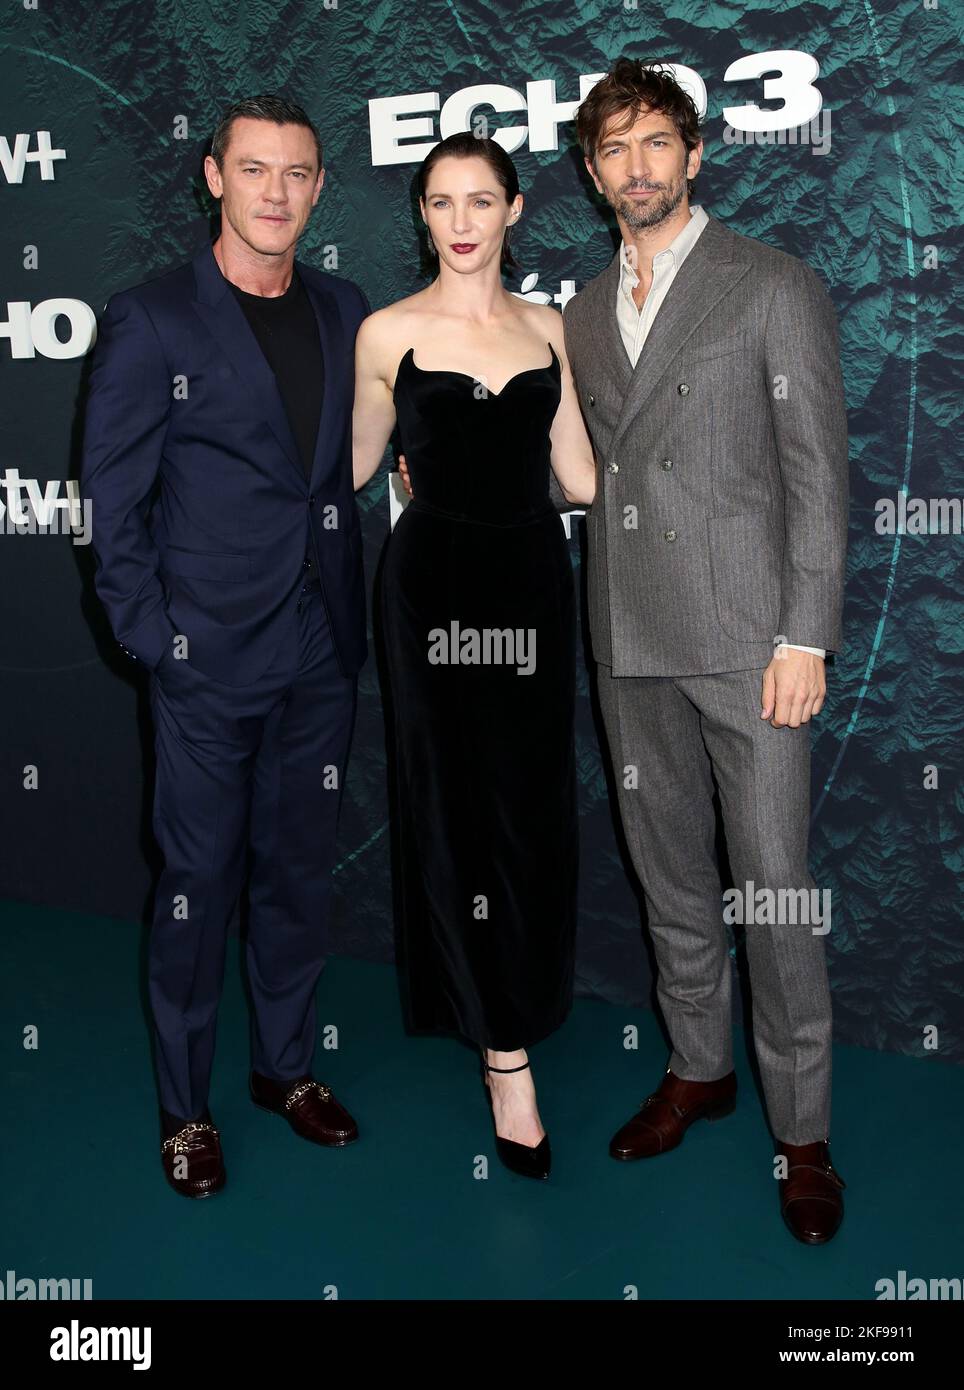 Jessica Ann Collins Joins Luke Evans & Michiel Huisman In 'Echo 3